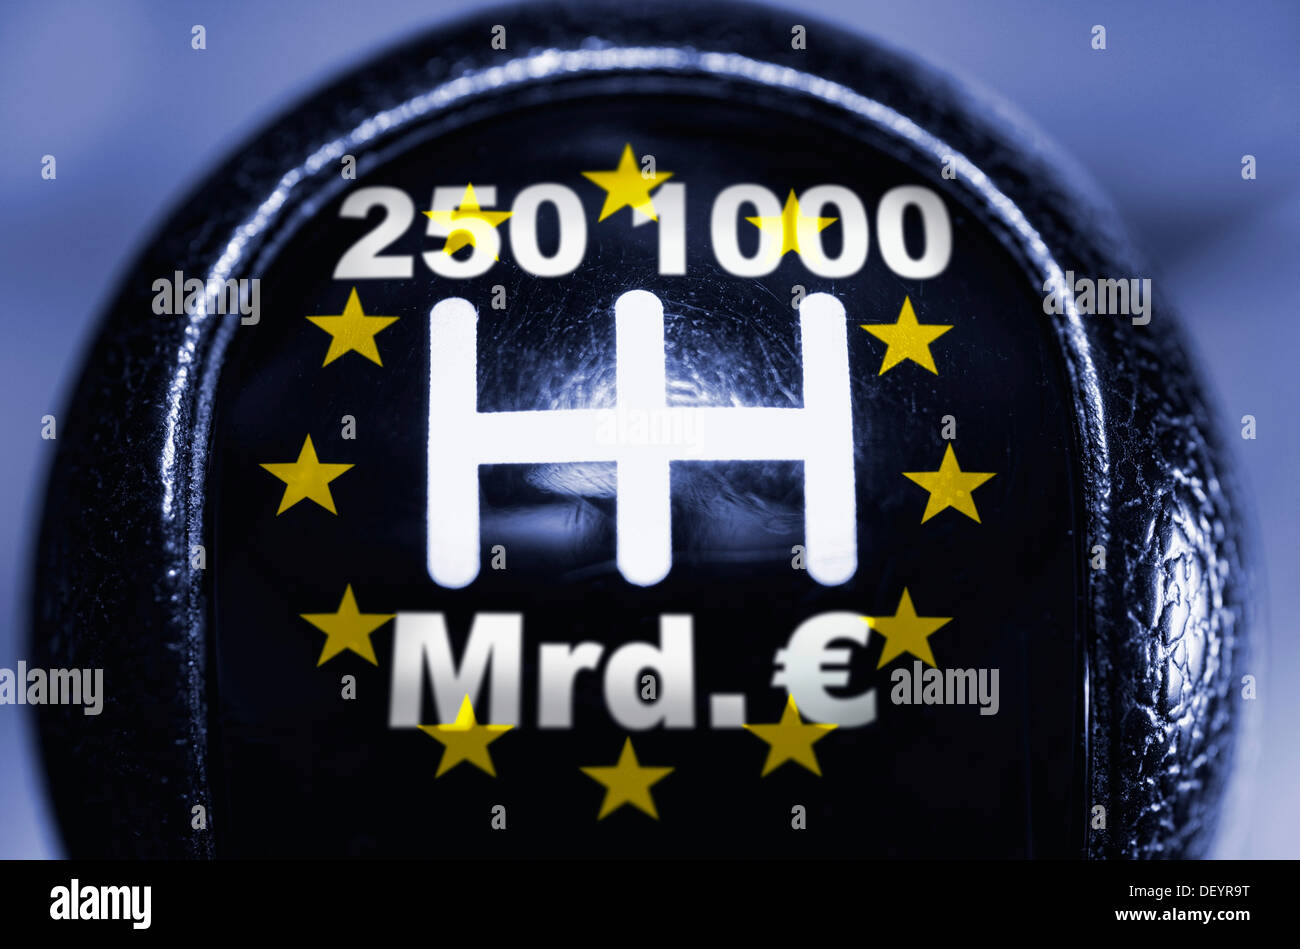 Schalthebel mit 250 und 1000 Milliarden Euro-Optionen, symbolisches Bild, Rettung Hebel, Rettung des Euro Stockfoto